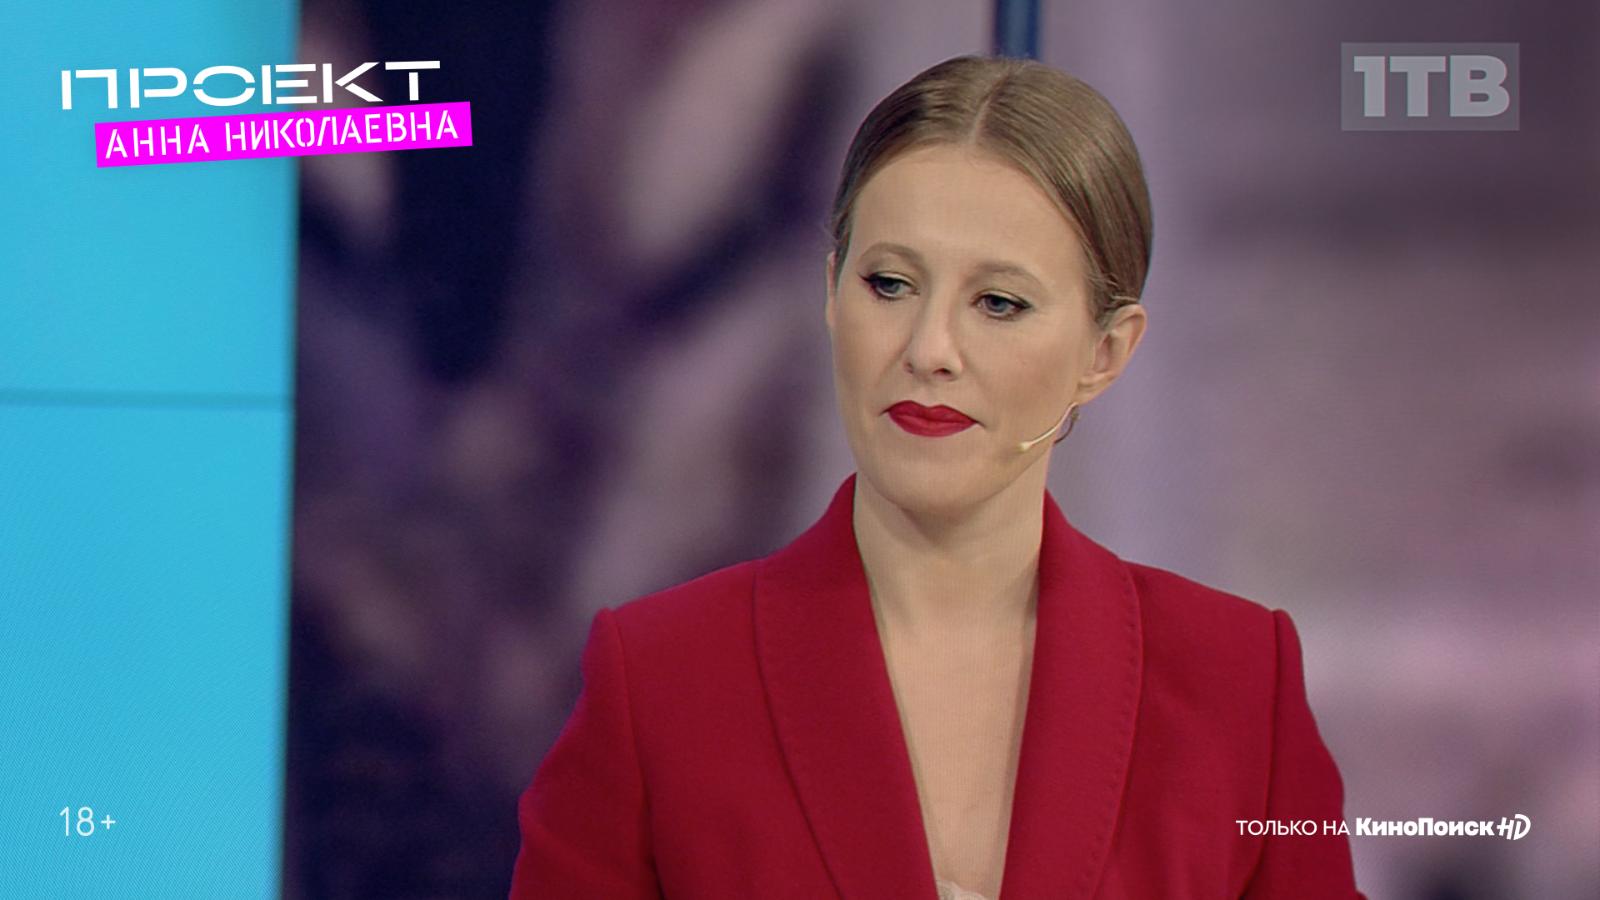 Ксения Собчак сыграла саму себя в комедийном сериале «Проект «Анна Николаевна» на КиноПоиск HD